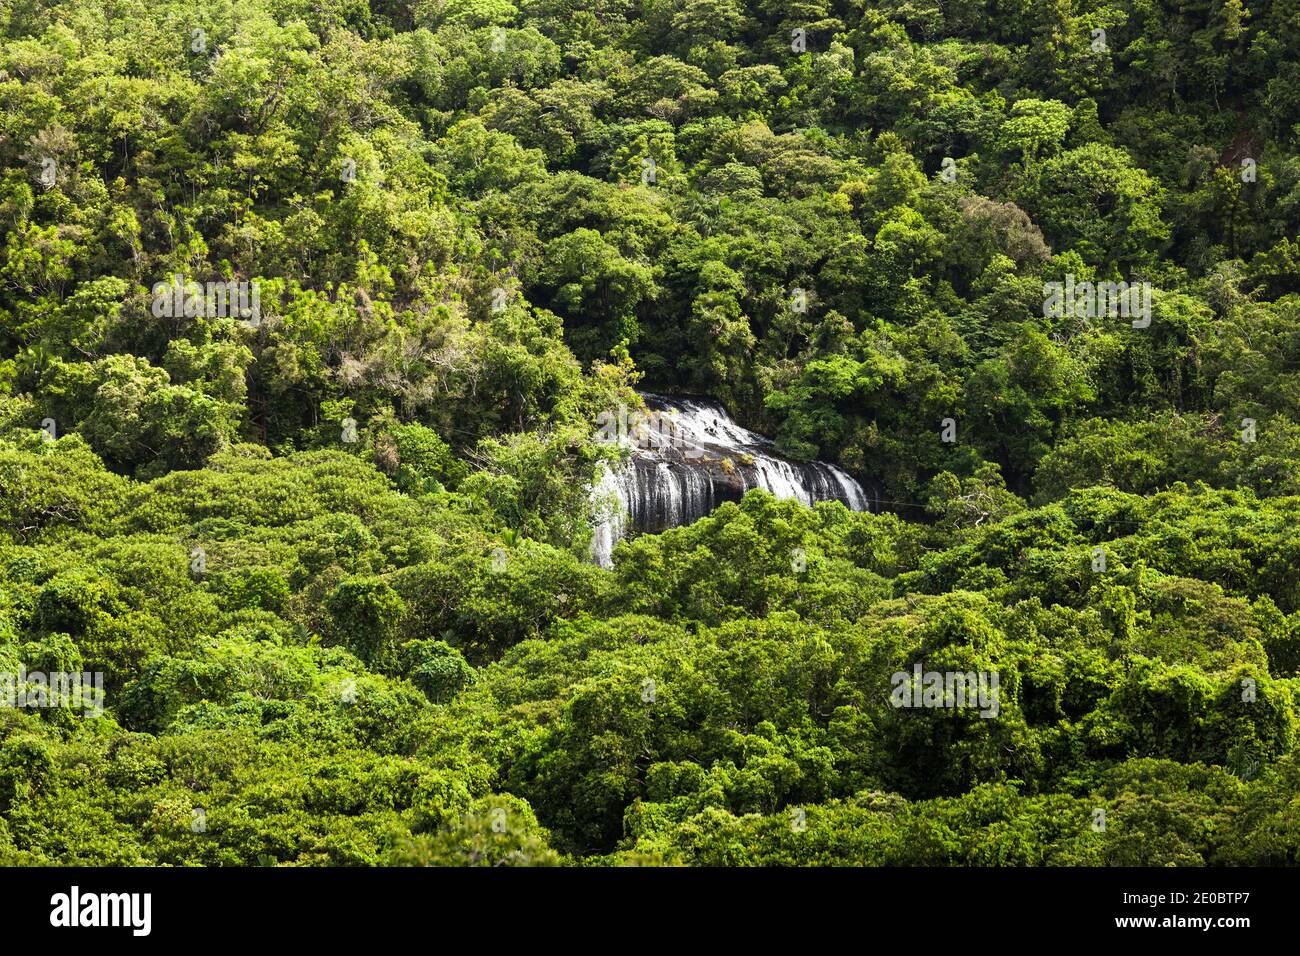 Vue lointaine de la chute d'eau de Ngardmau et du profond jngule de la forêt tropicale de montagne, Ngardau, île de Babeldaob, Palau, Micronésie, Océanie Banque D'Images